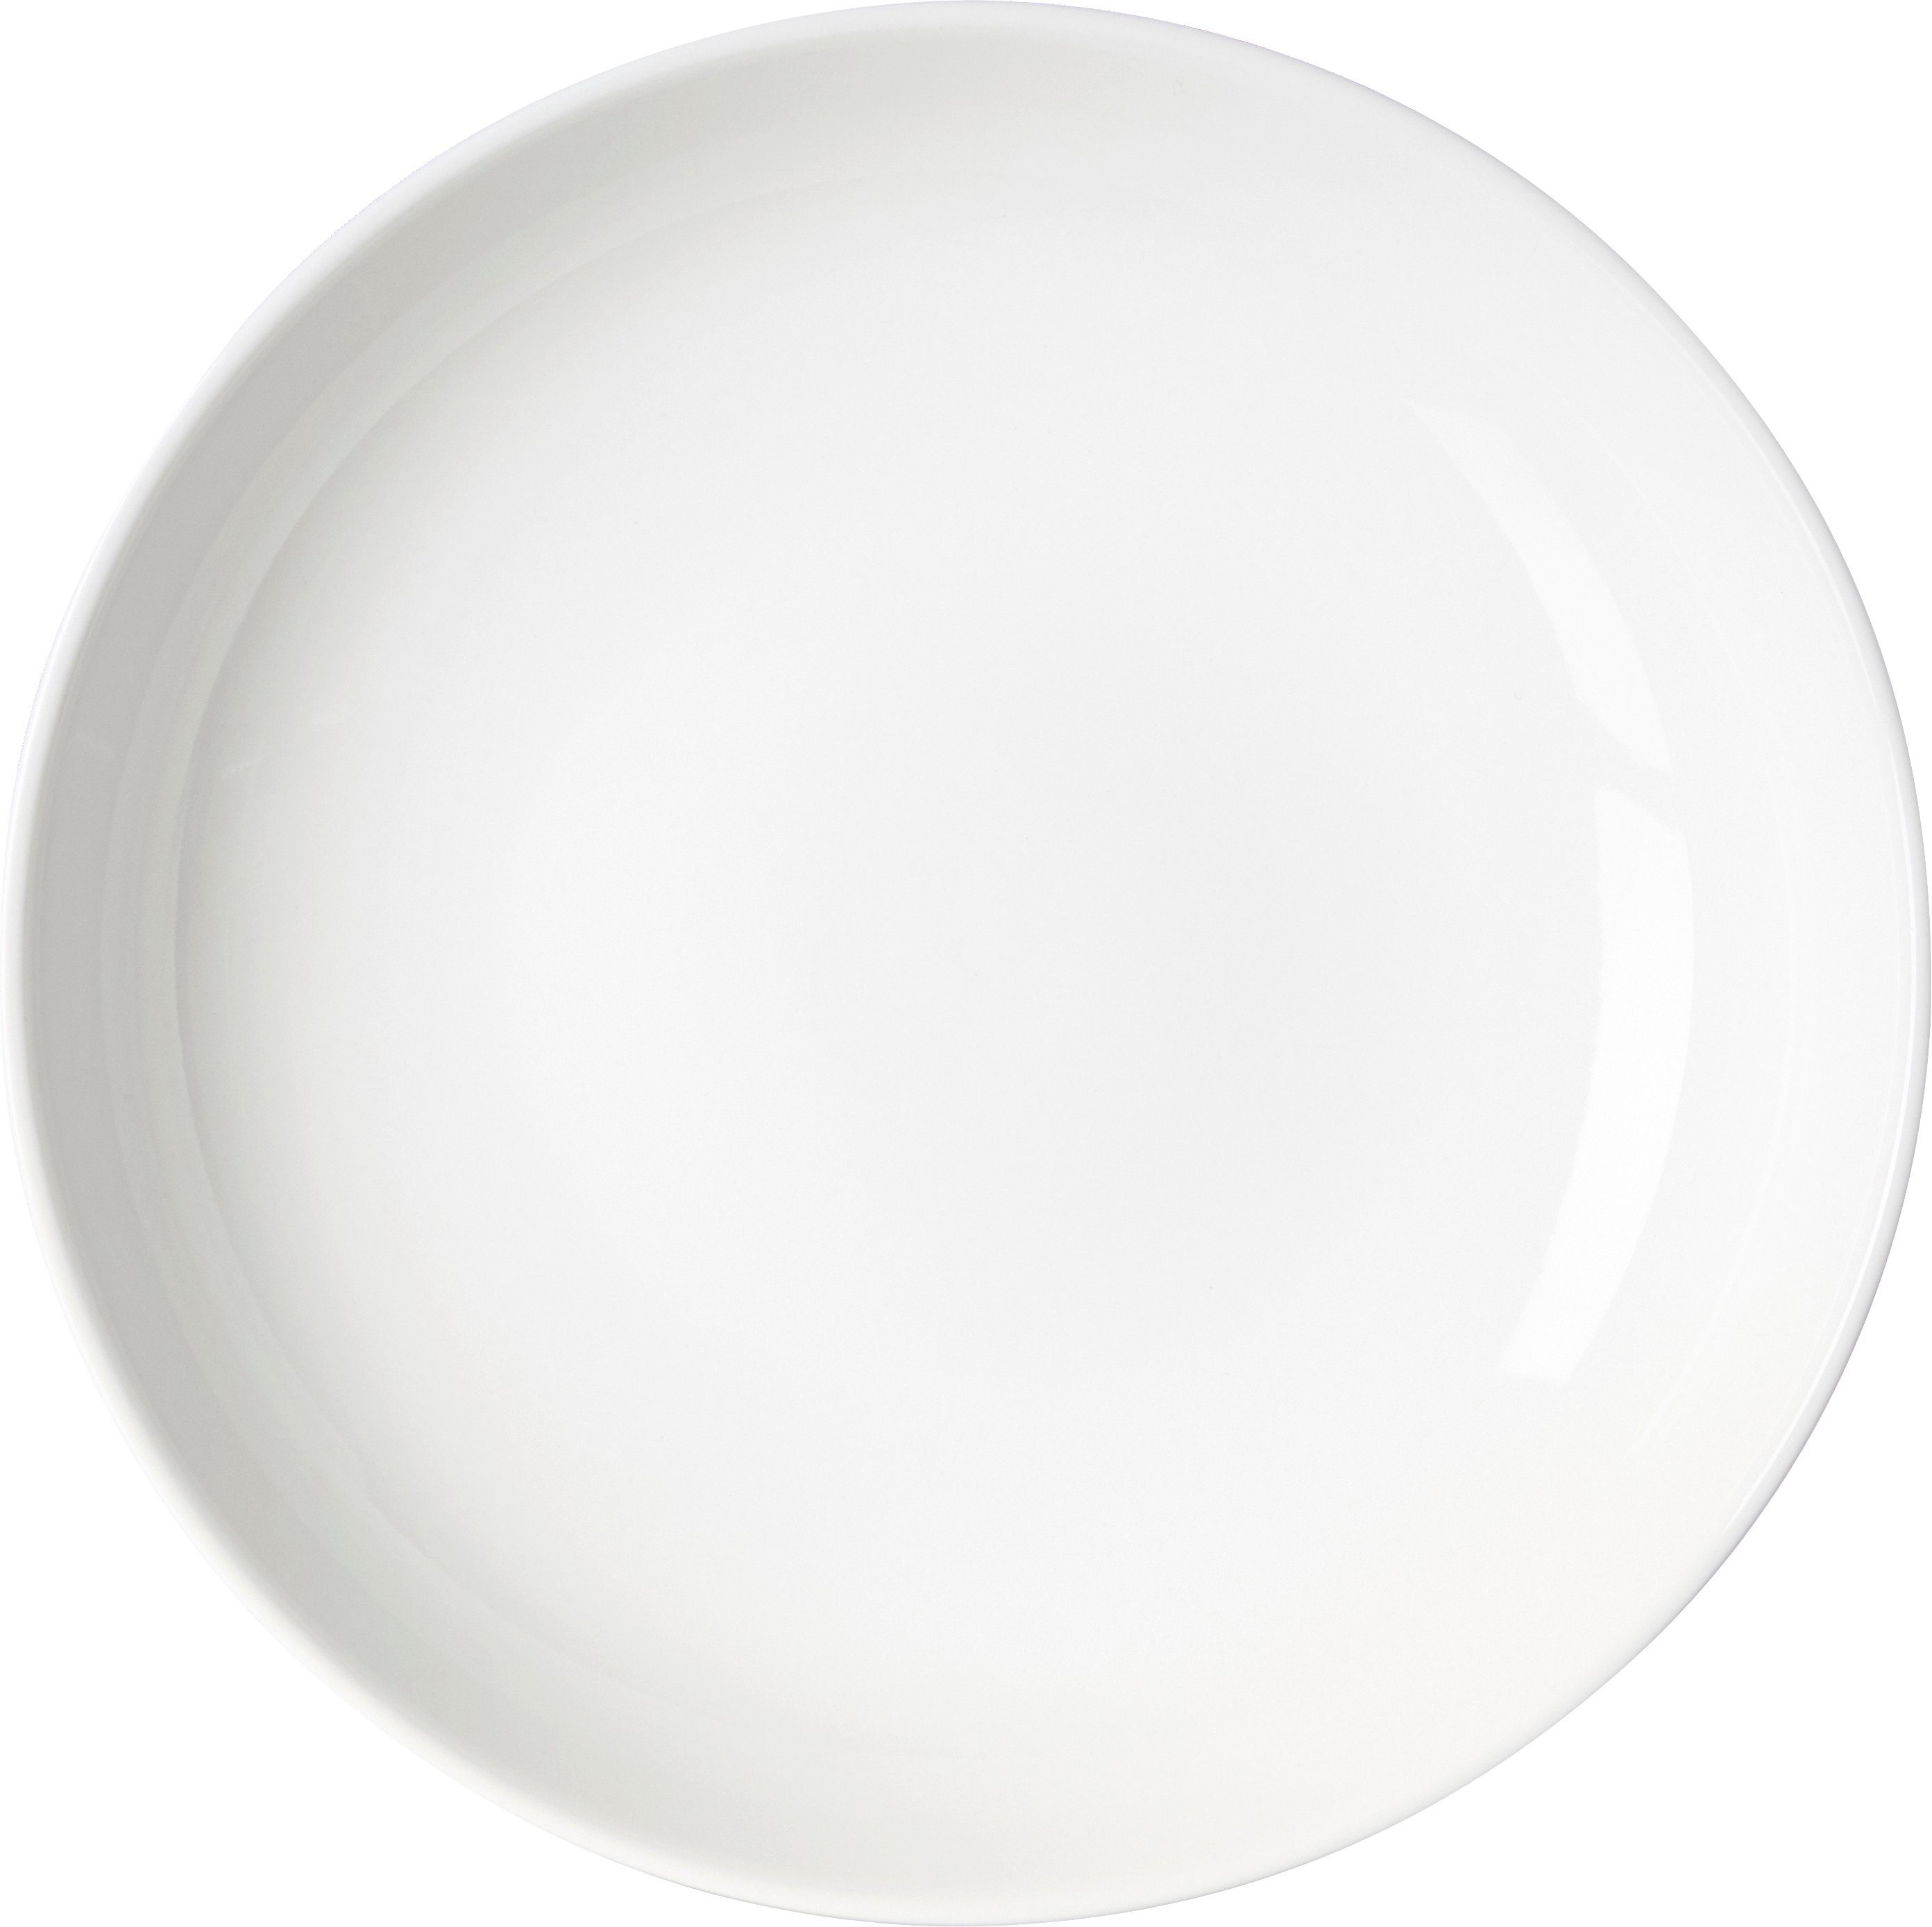 Ritzenhoff & Breker Teller Speiseteller Teller Skagen Porzellan weiß rund Ø 21,5 x H 5 cm